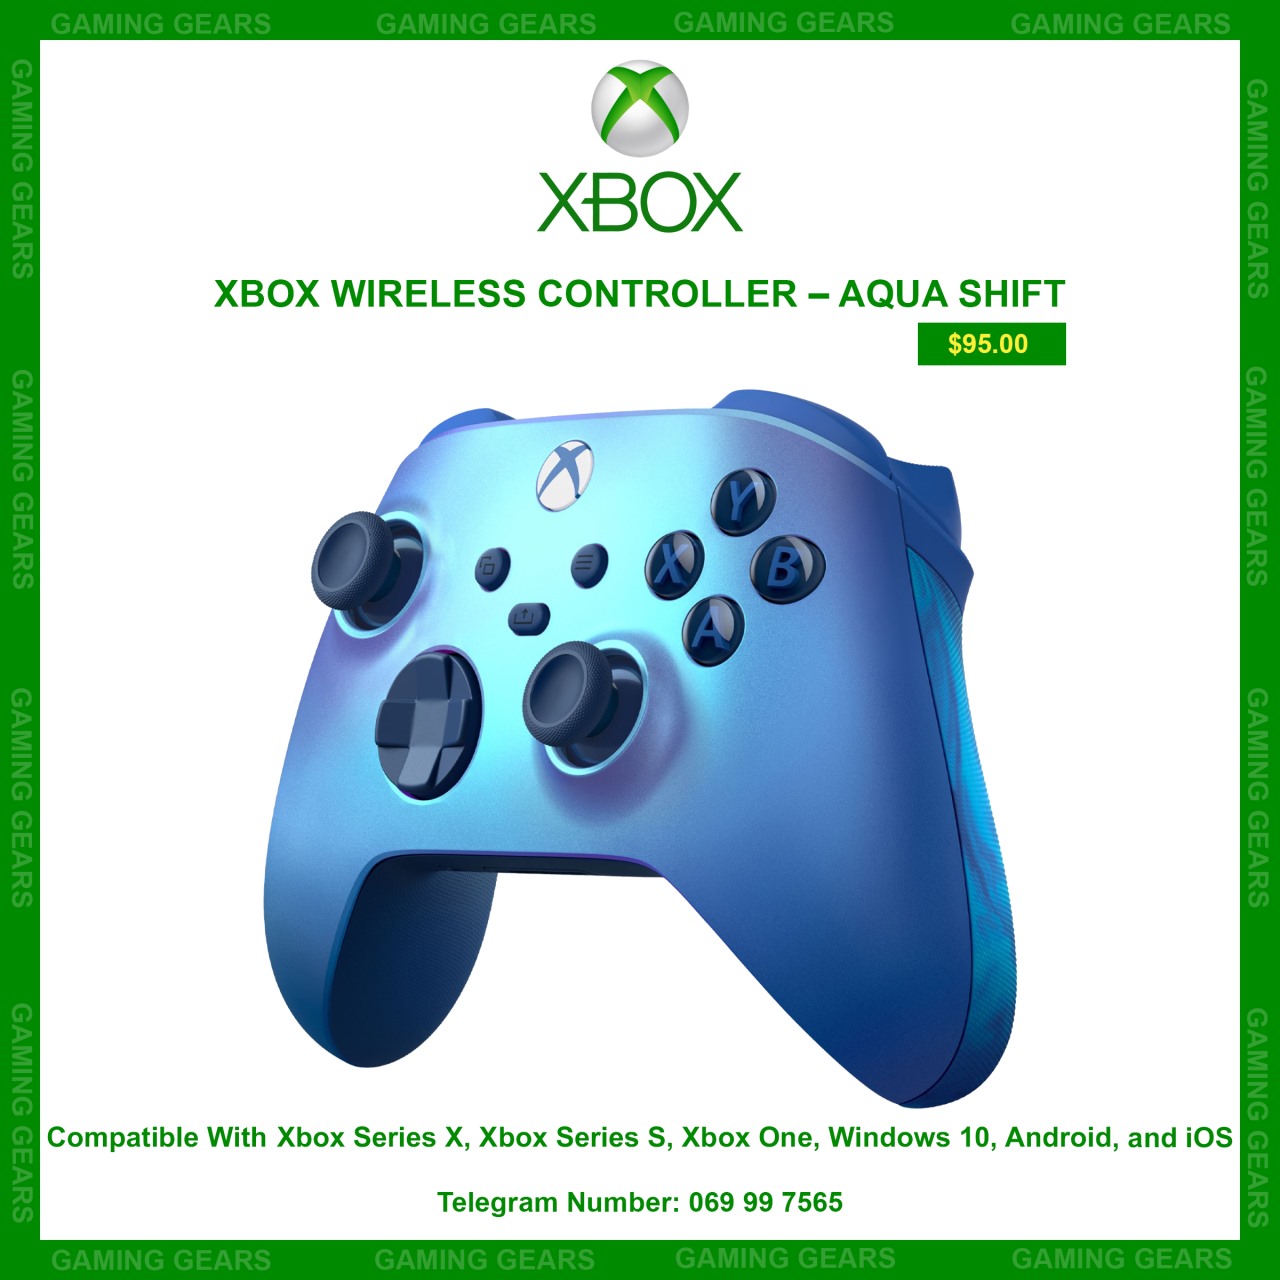 XBOX WIRELESS CONTROLLER – AQUA SHIFT